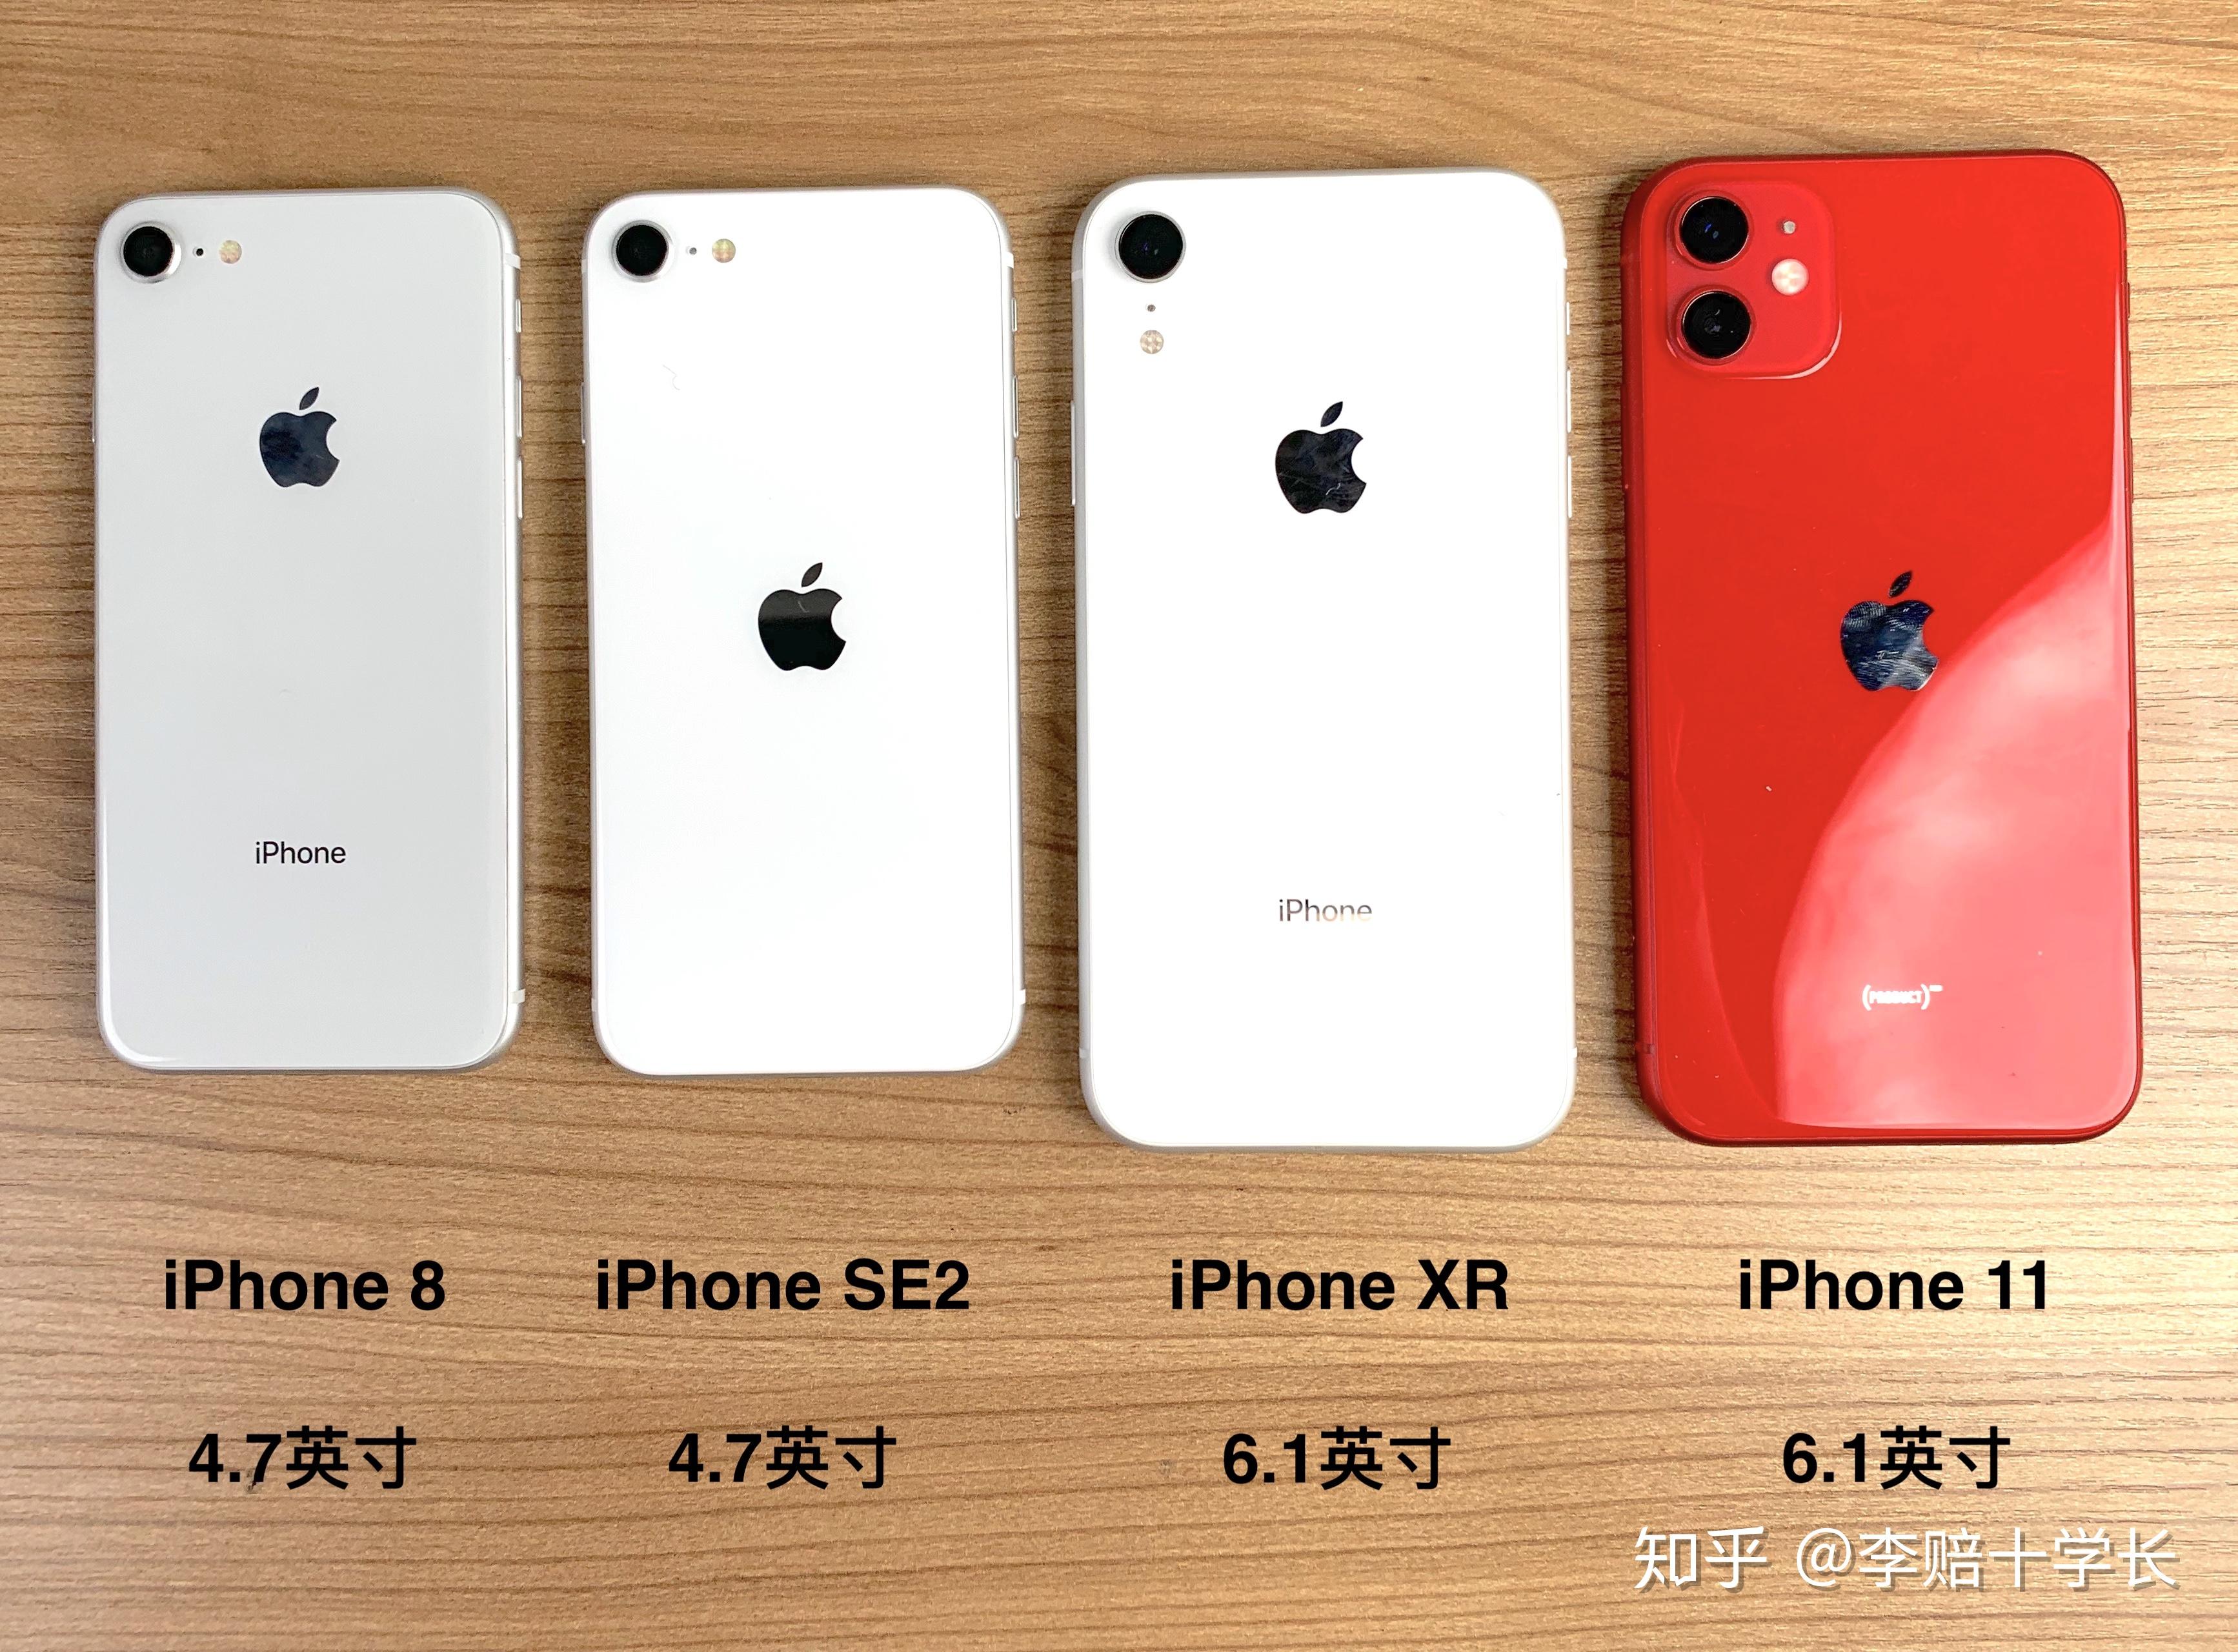 苹果iPhone15Pro设计图曝光